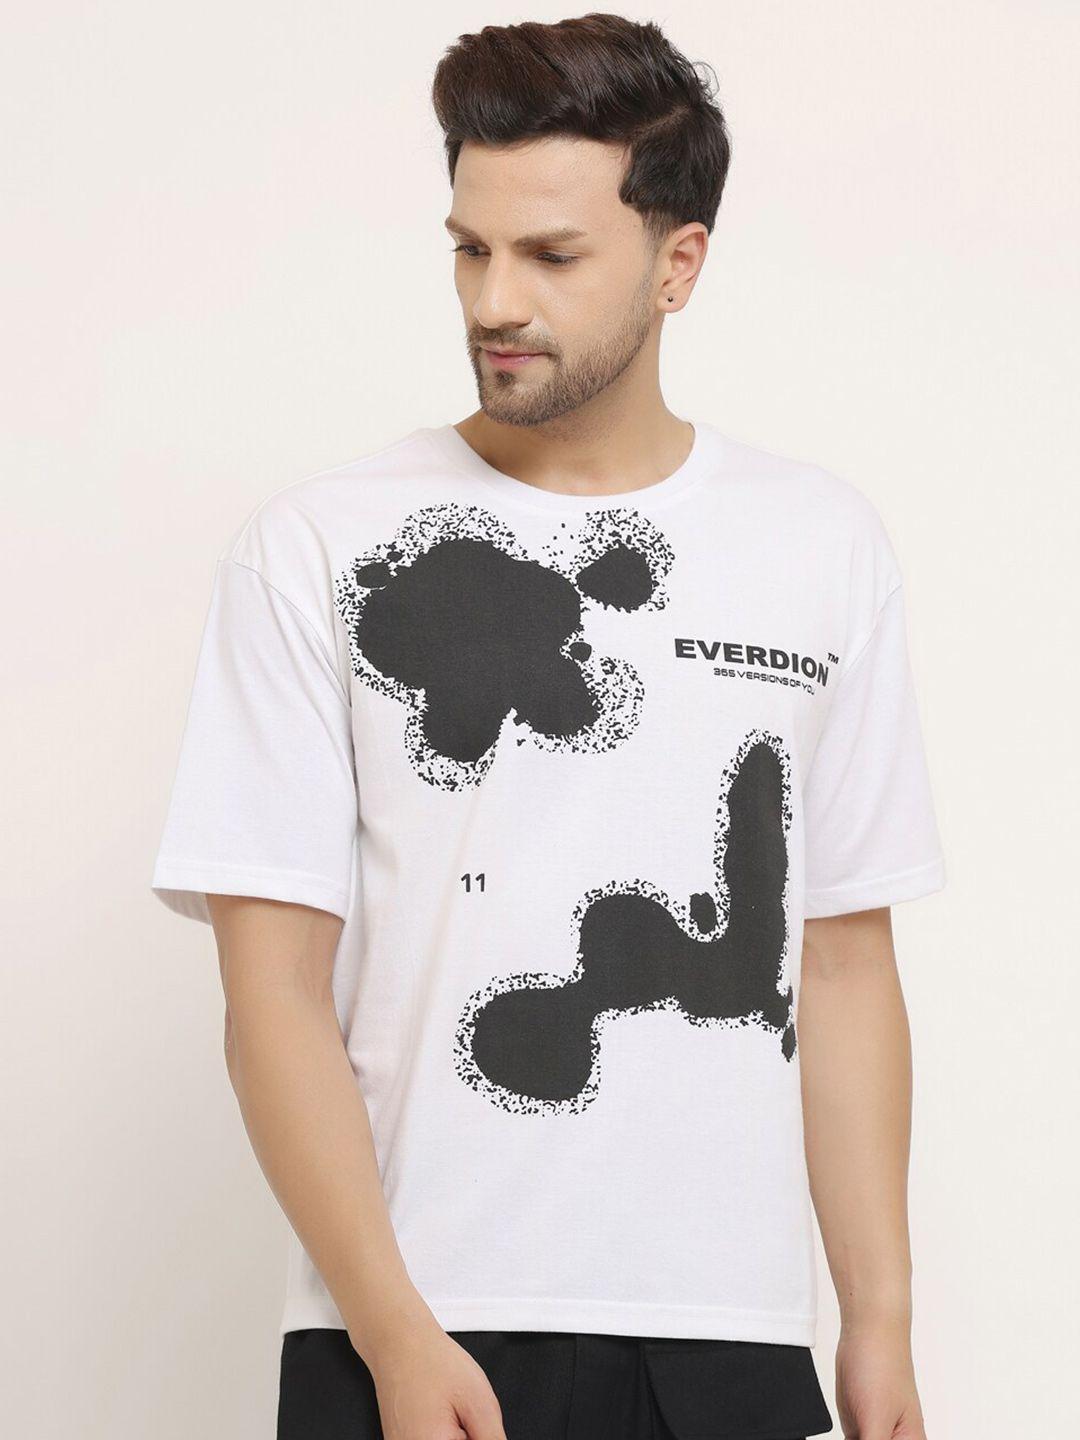 everdion men white & black printed drop-shoulder sleeves bio finish loose t-shirt